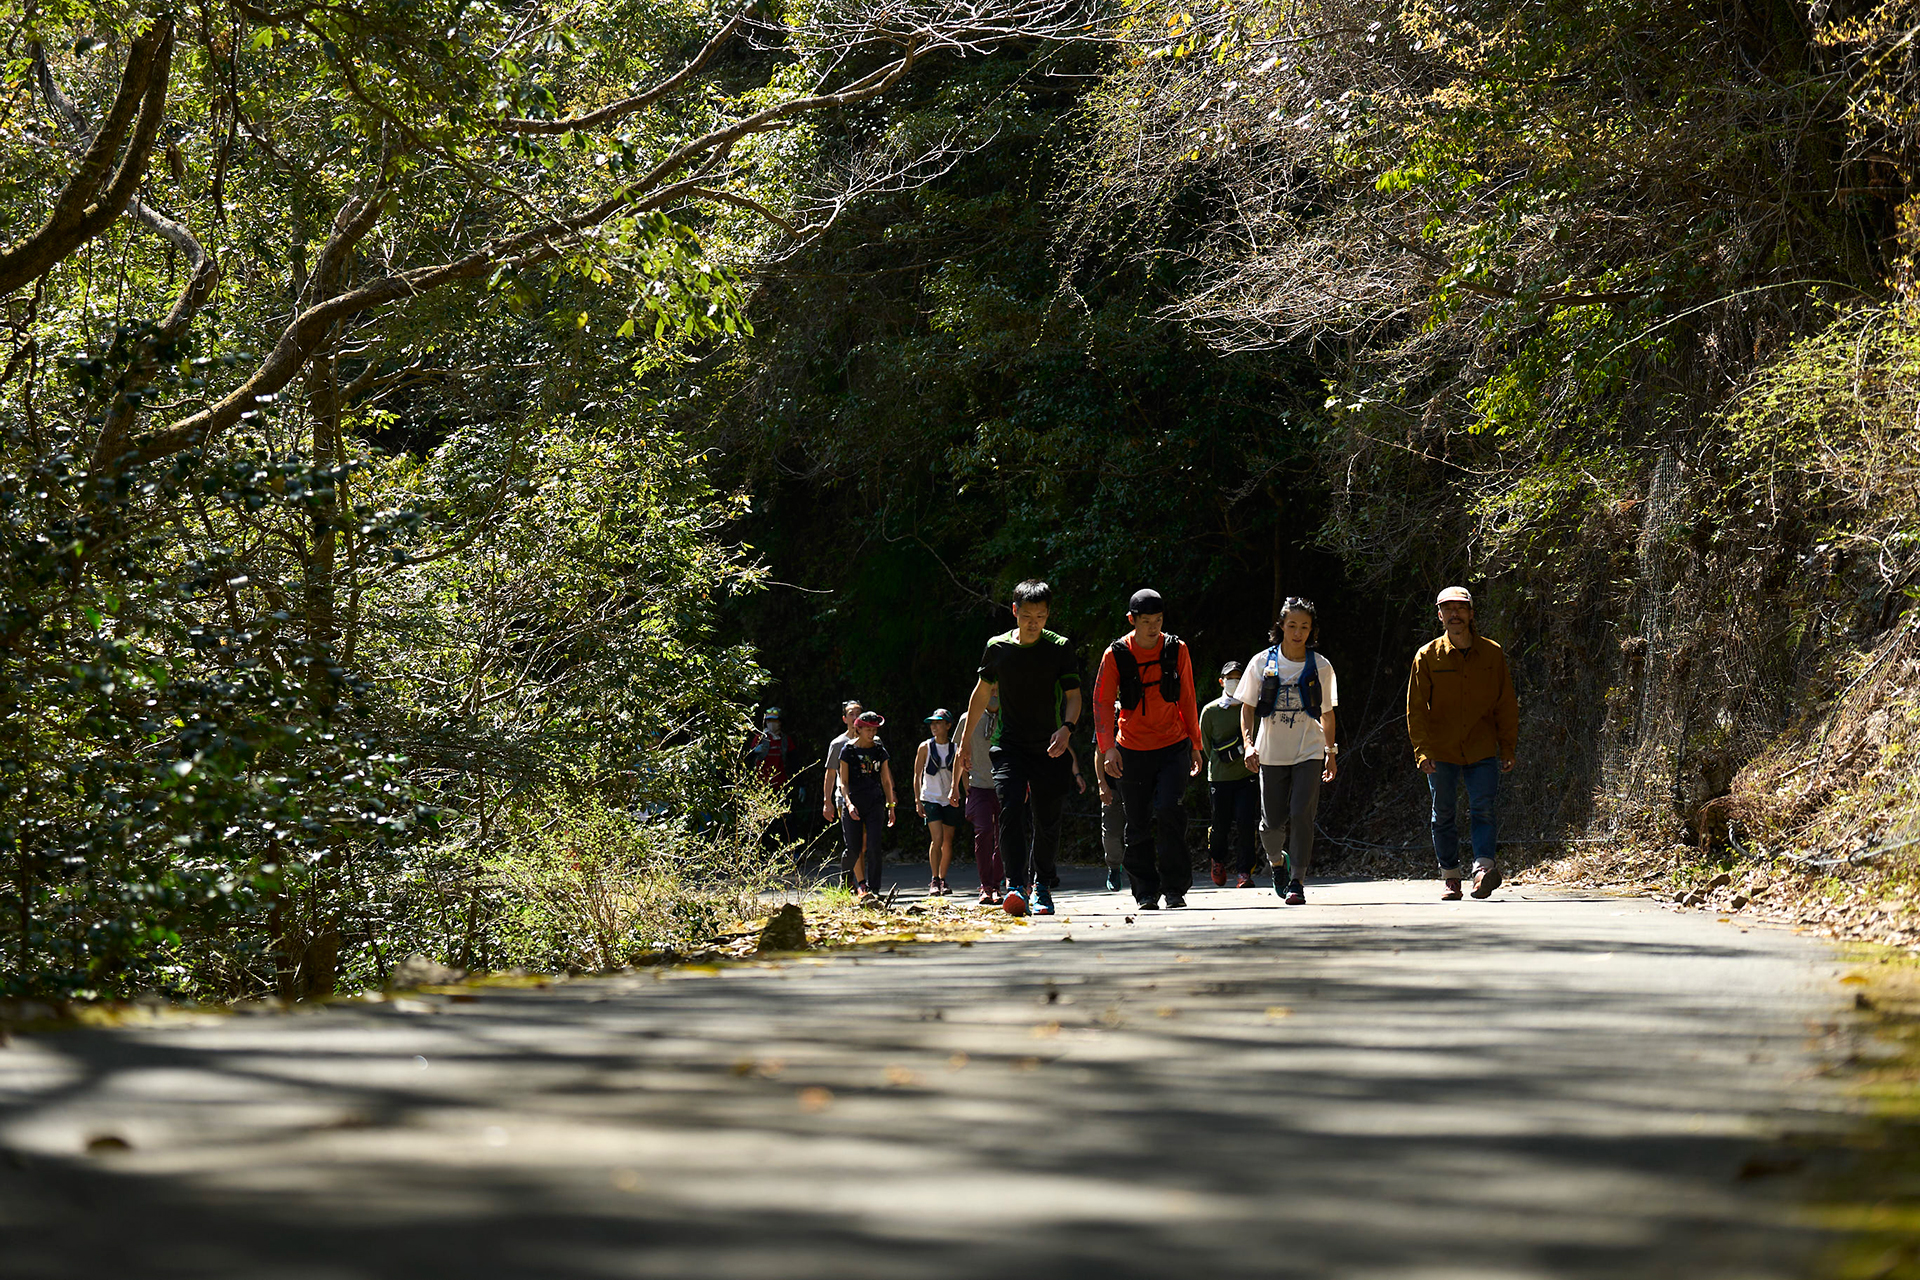 5 〜幻の熊野古道再生を目指す「奥辺路（おくへち）プロジェクト」とは〜 「トレイルランニングの半分はトレイルでできている」<br/>トレイルランナー・中川政寿